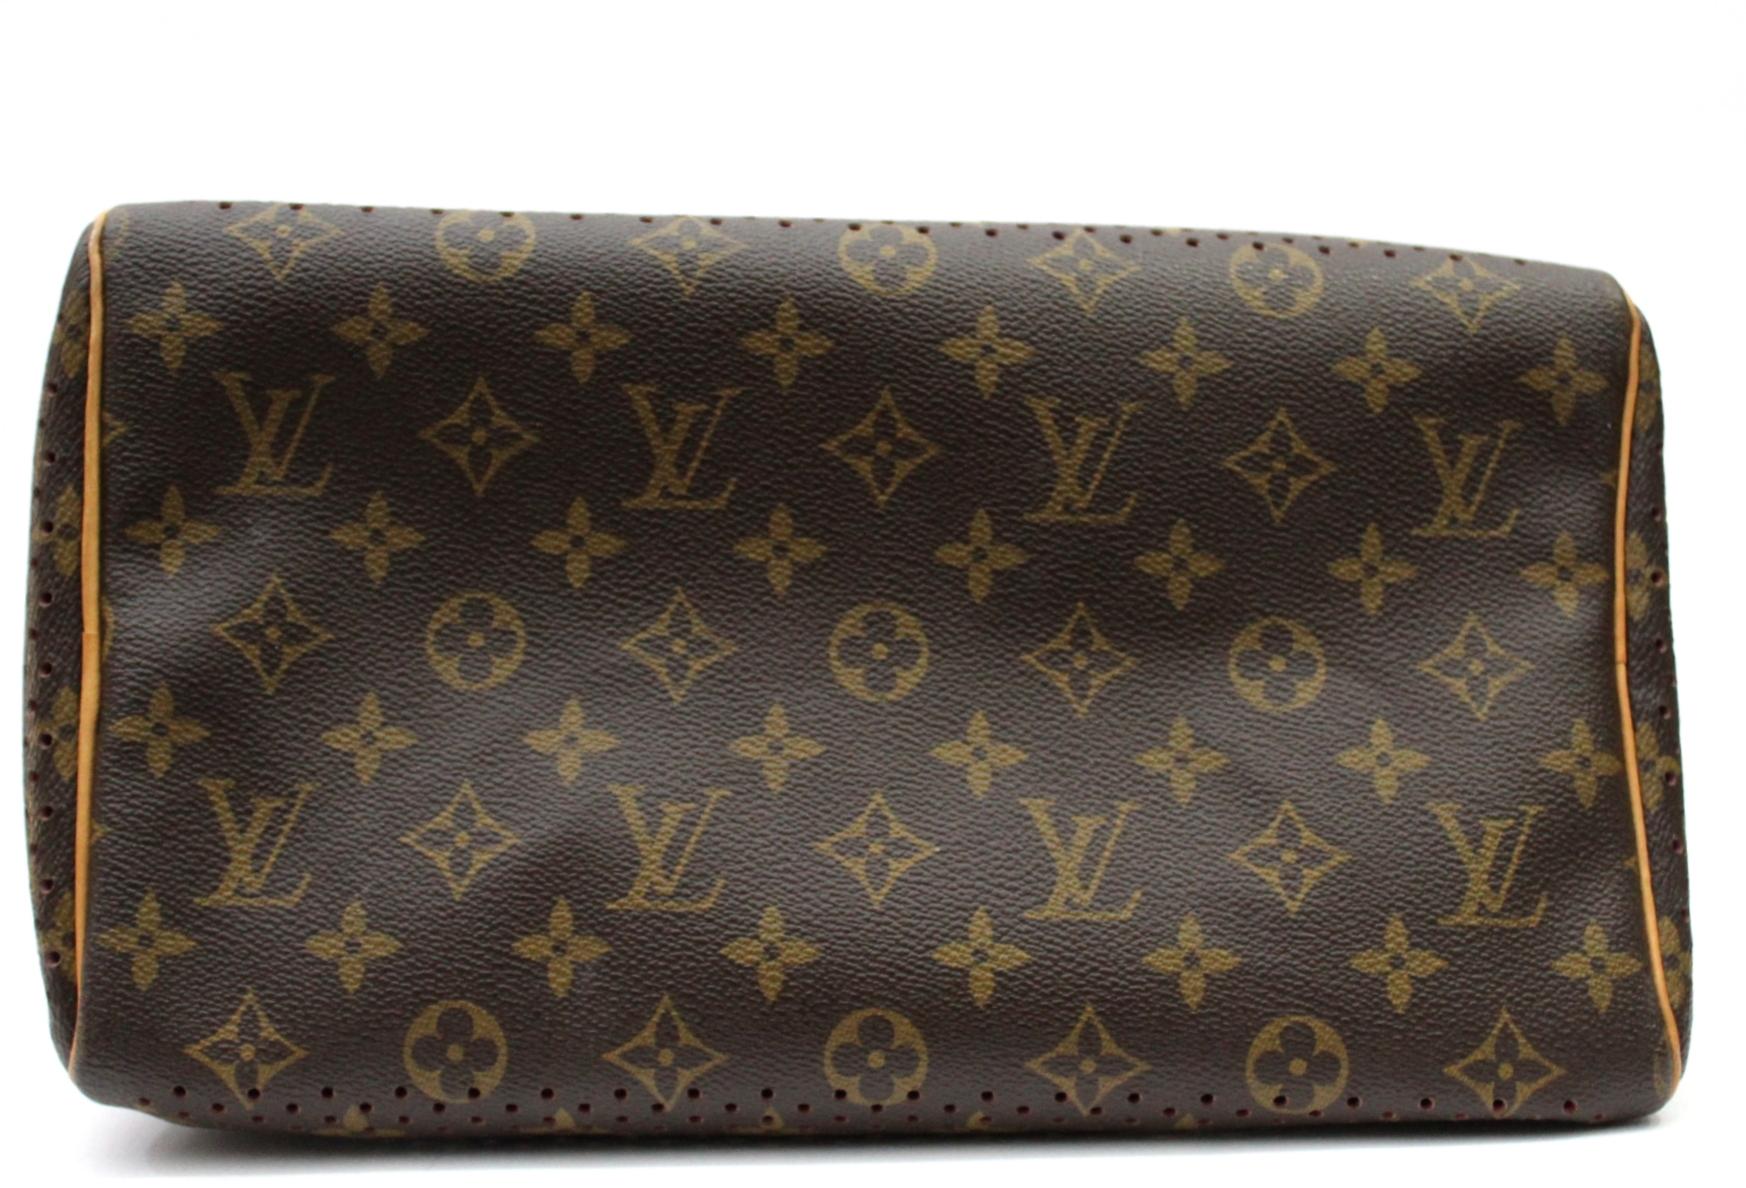 Verpassen Sie nicht Ihre Chance:: diese spektakuläre Louis Vuitton Limited Edition Fuchsia Monogram Perforated Speedy 30 Bag zu besitzen. Dieser beliebte Speedy-Stil hat das ikonische Monogramm-Canvas:: das perforiert und mit pinkem Alcantara